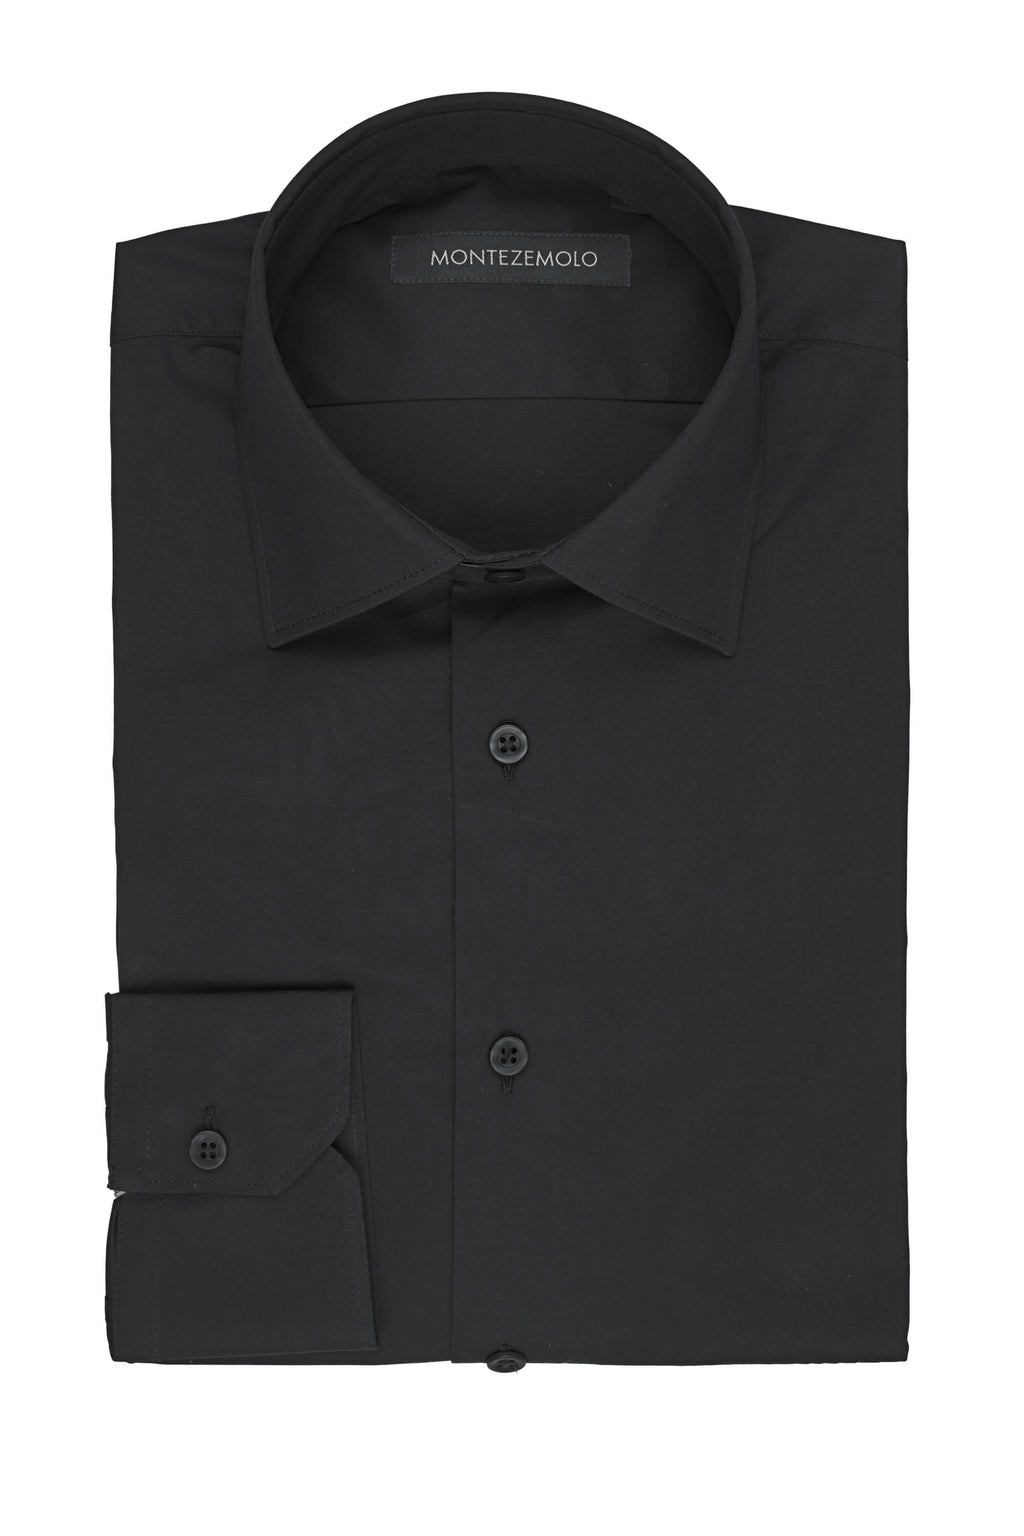 MONTEZEMOLO Shop Online | Black Plain Cotton Shirt